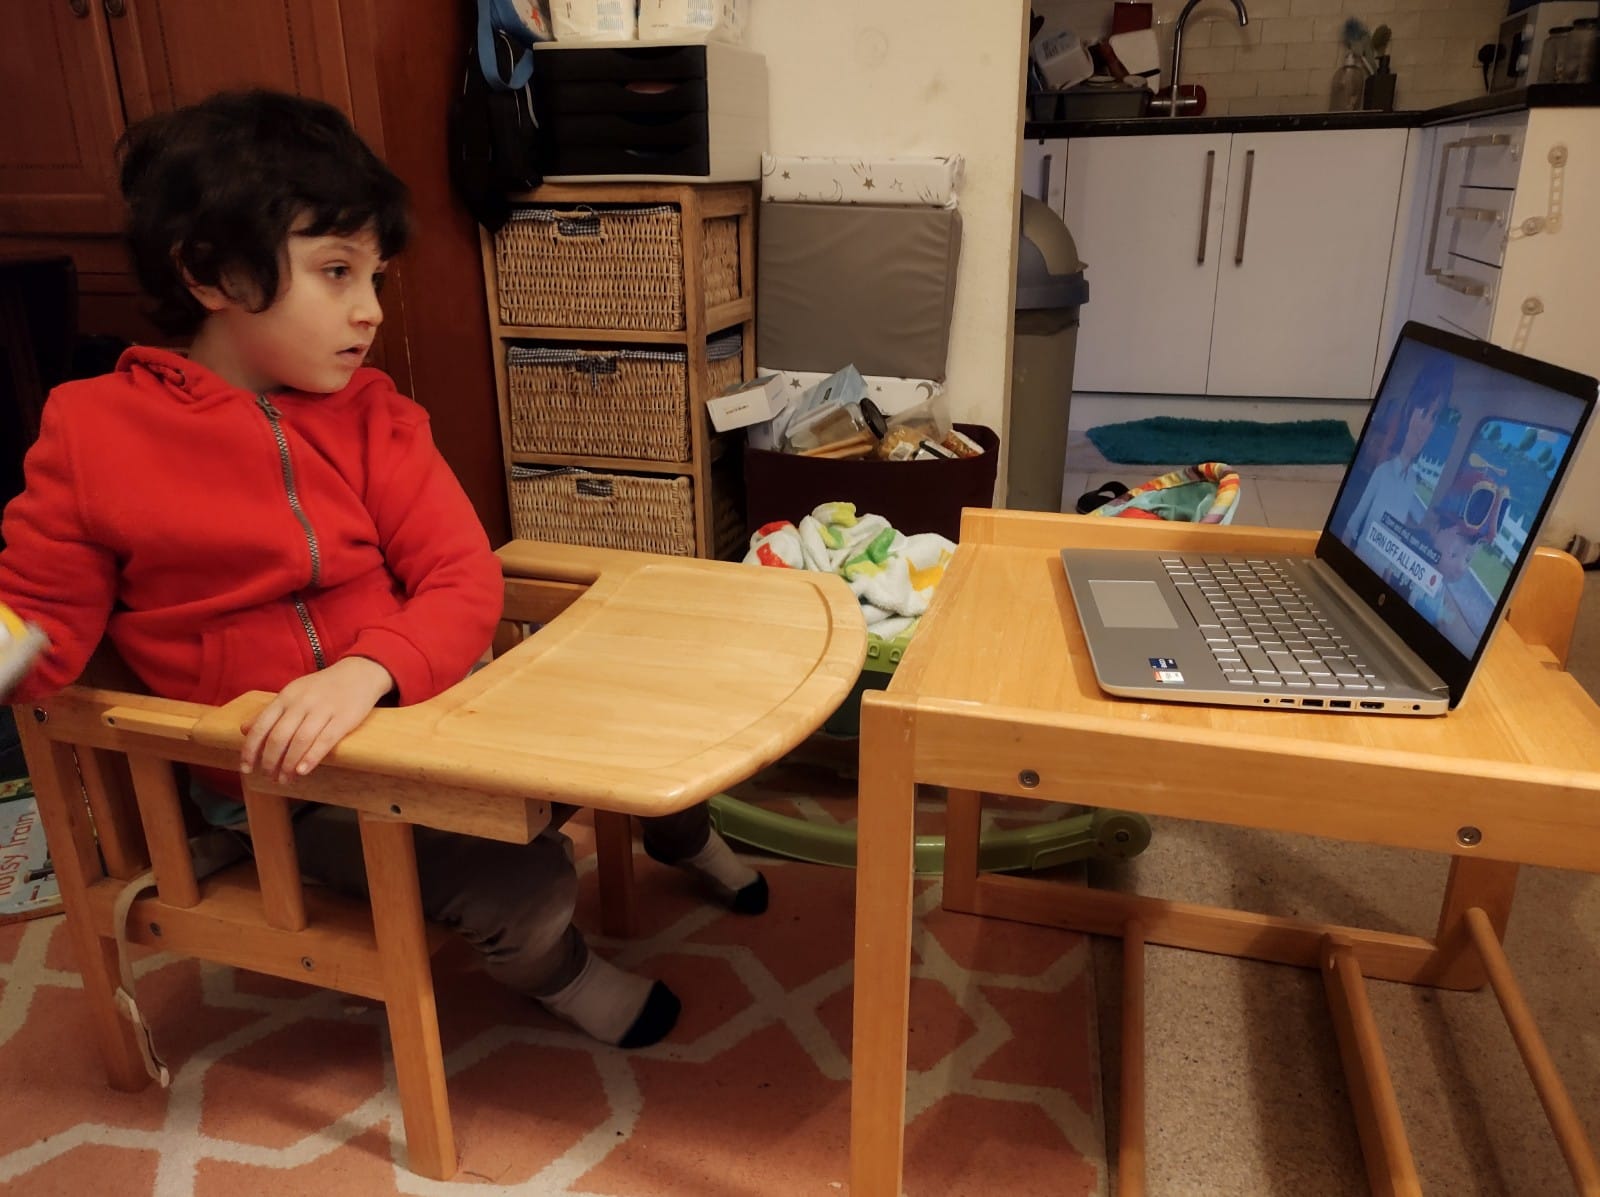 A boy looks at a laptop